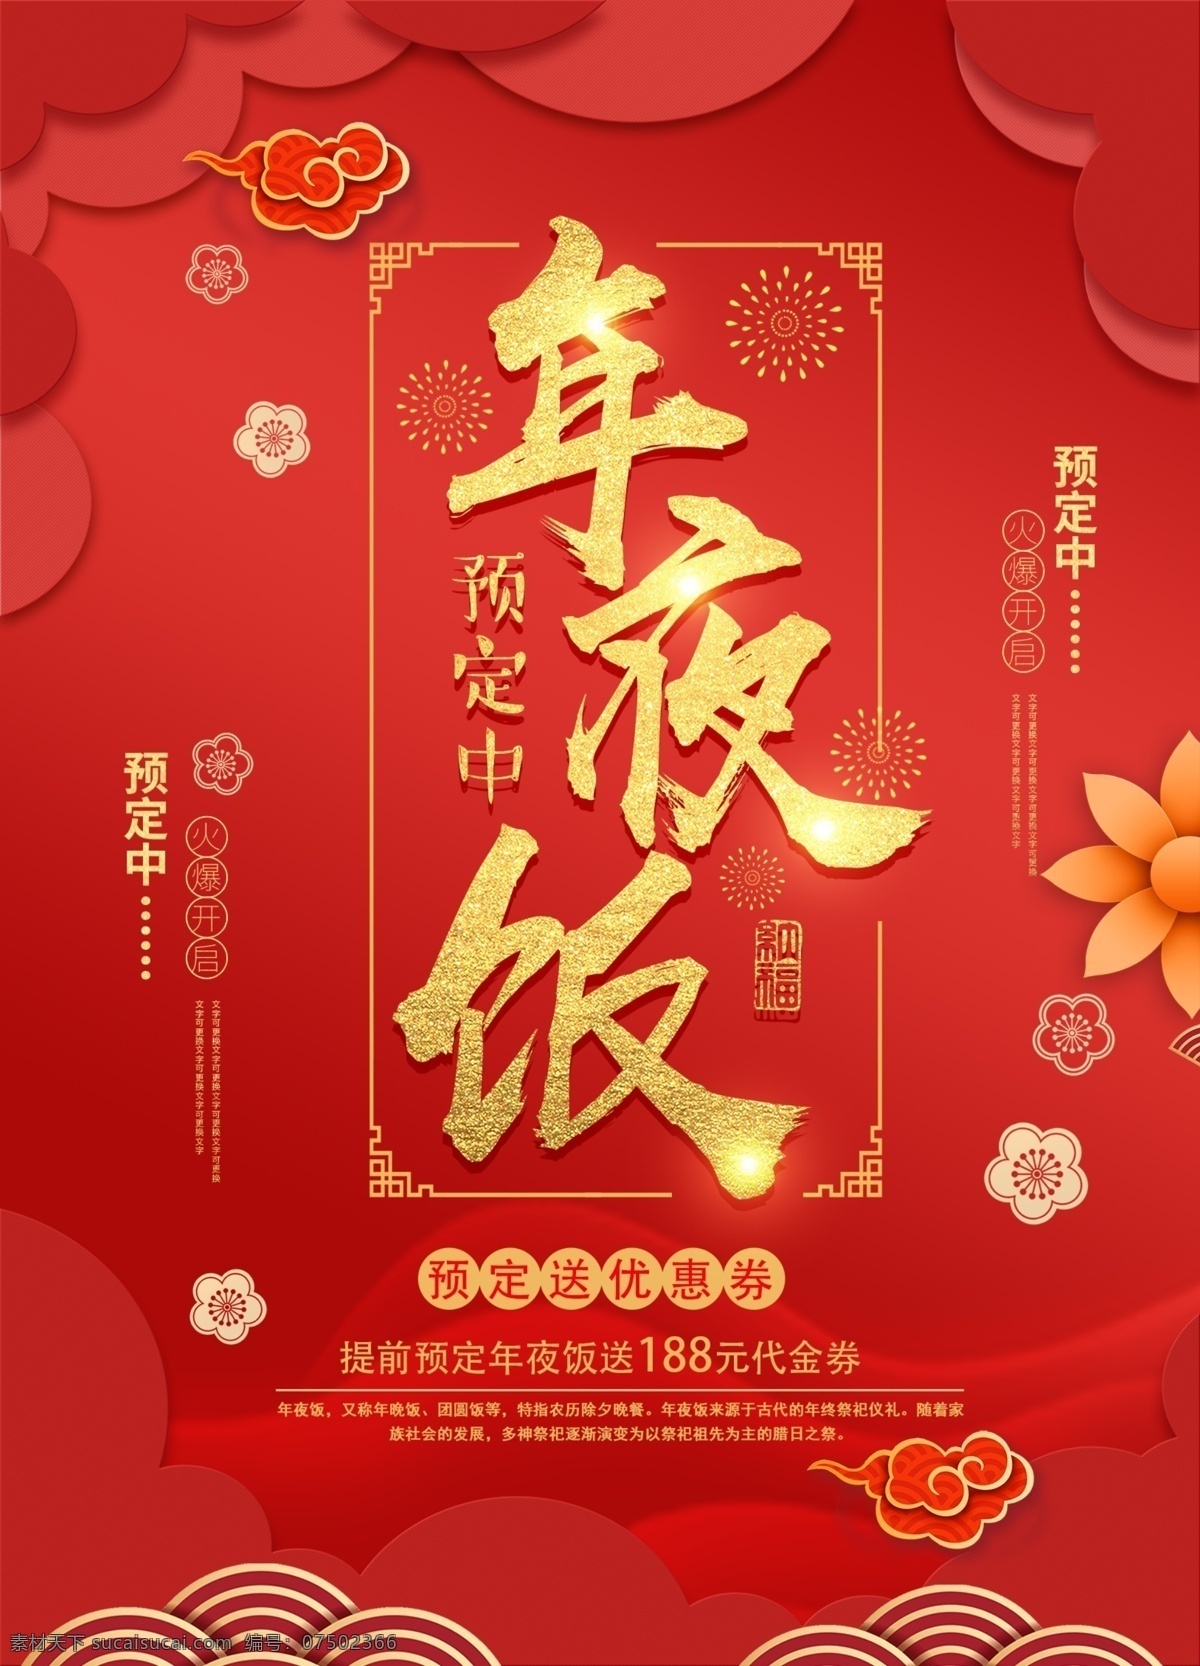 2019 红色 喜庆 年夜饭 预订 海报 促销 美食餐饮 年夜饭预订 美食 美味